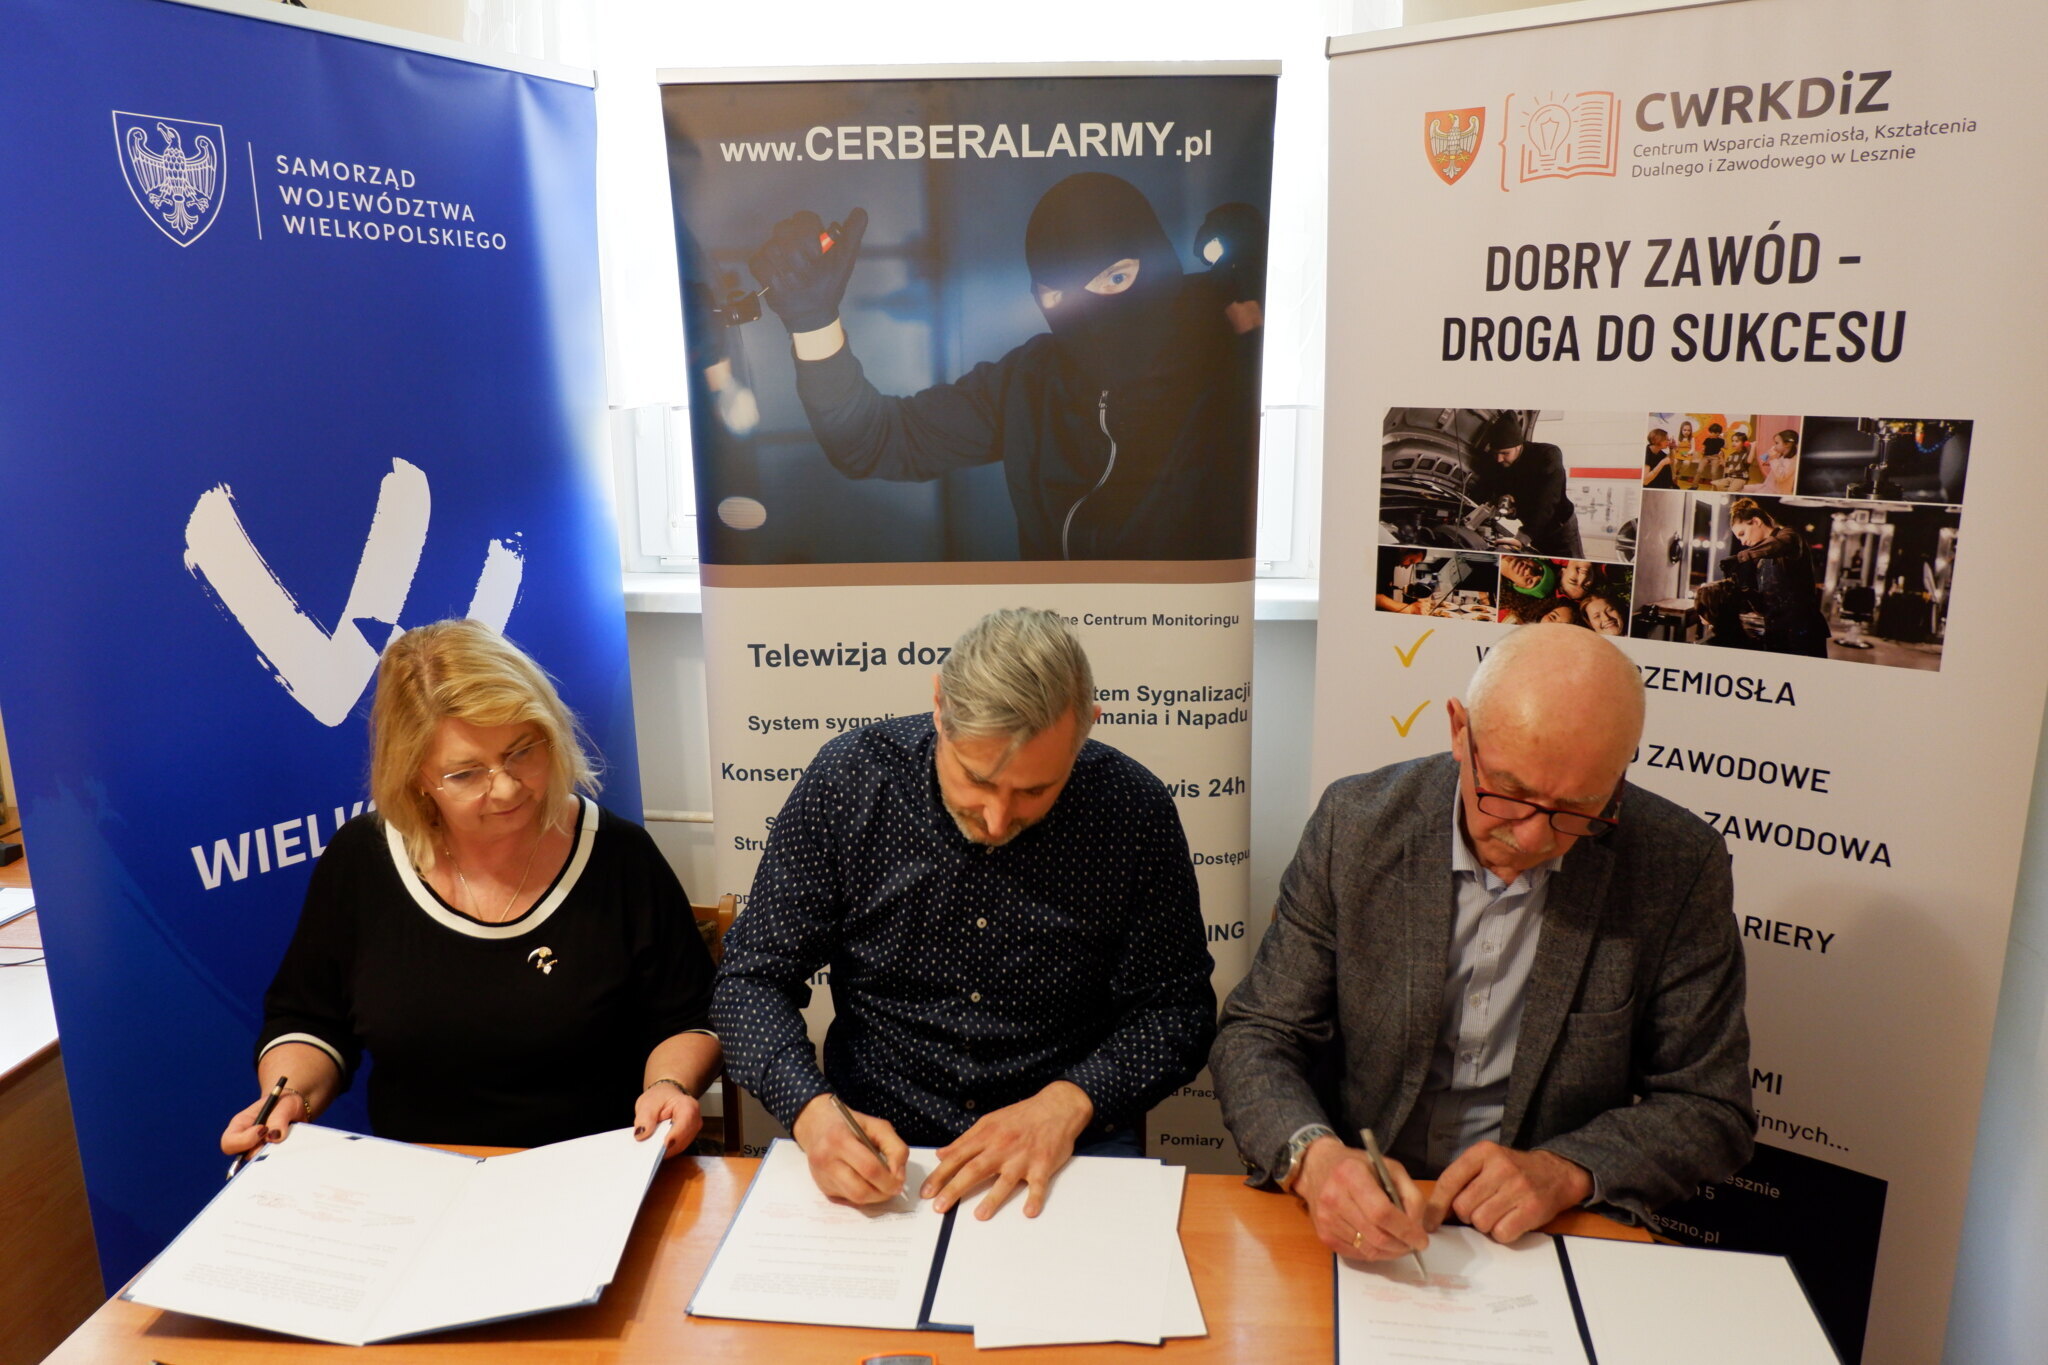 Na zdjęciu Dyrektor CWRKDiZ w Lesznie, właściciel firmy CERBER ALARMY oraz Dyrektor szkoły w Lesznie podpisują trójstronną umowę partnerską.